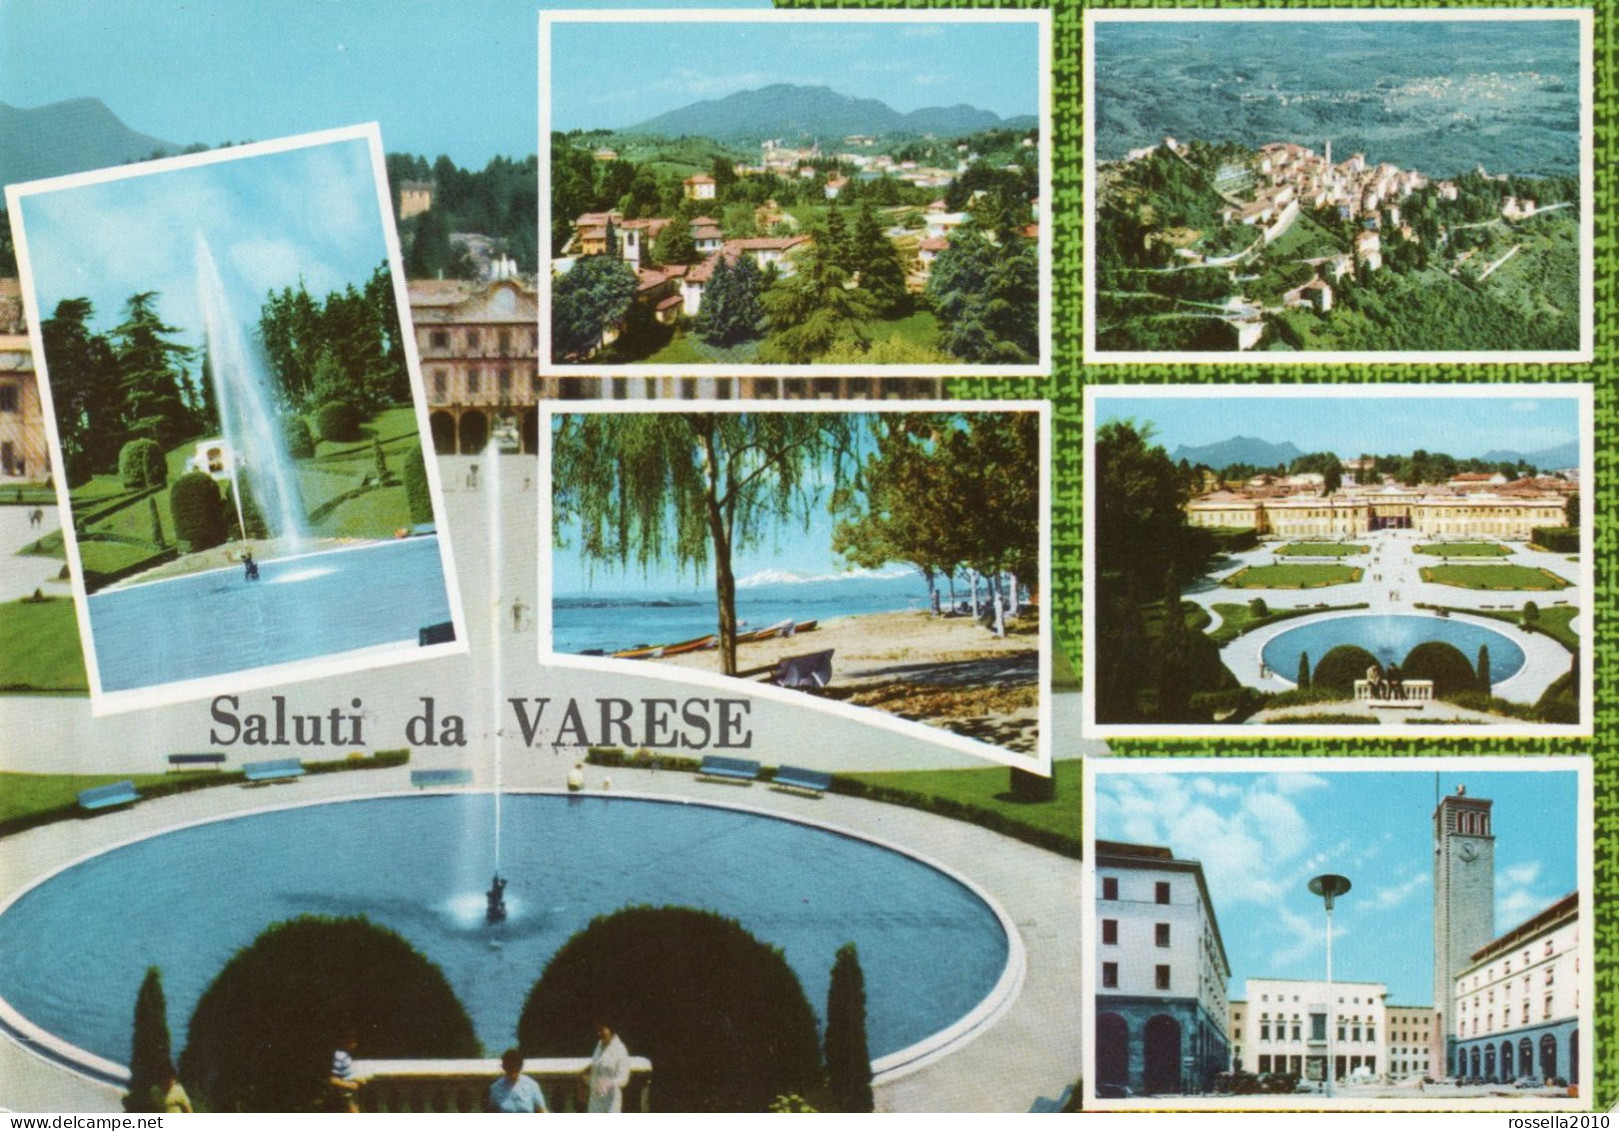 CARTOLINA ITALIA 1967 VARESE SALUTI VEDUTINE Italy Postcard ITALIEN Ansichtskarten - Varese